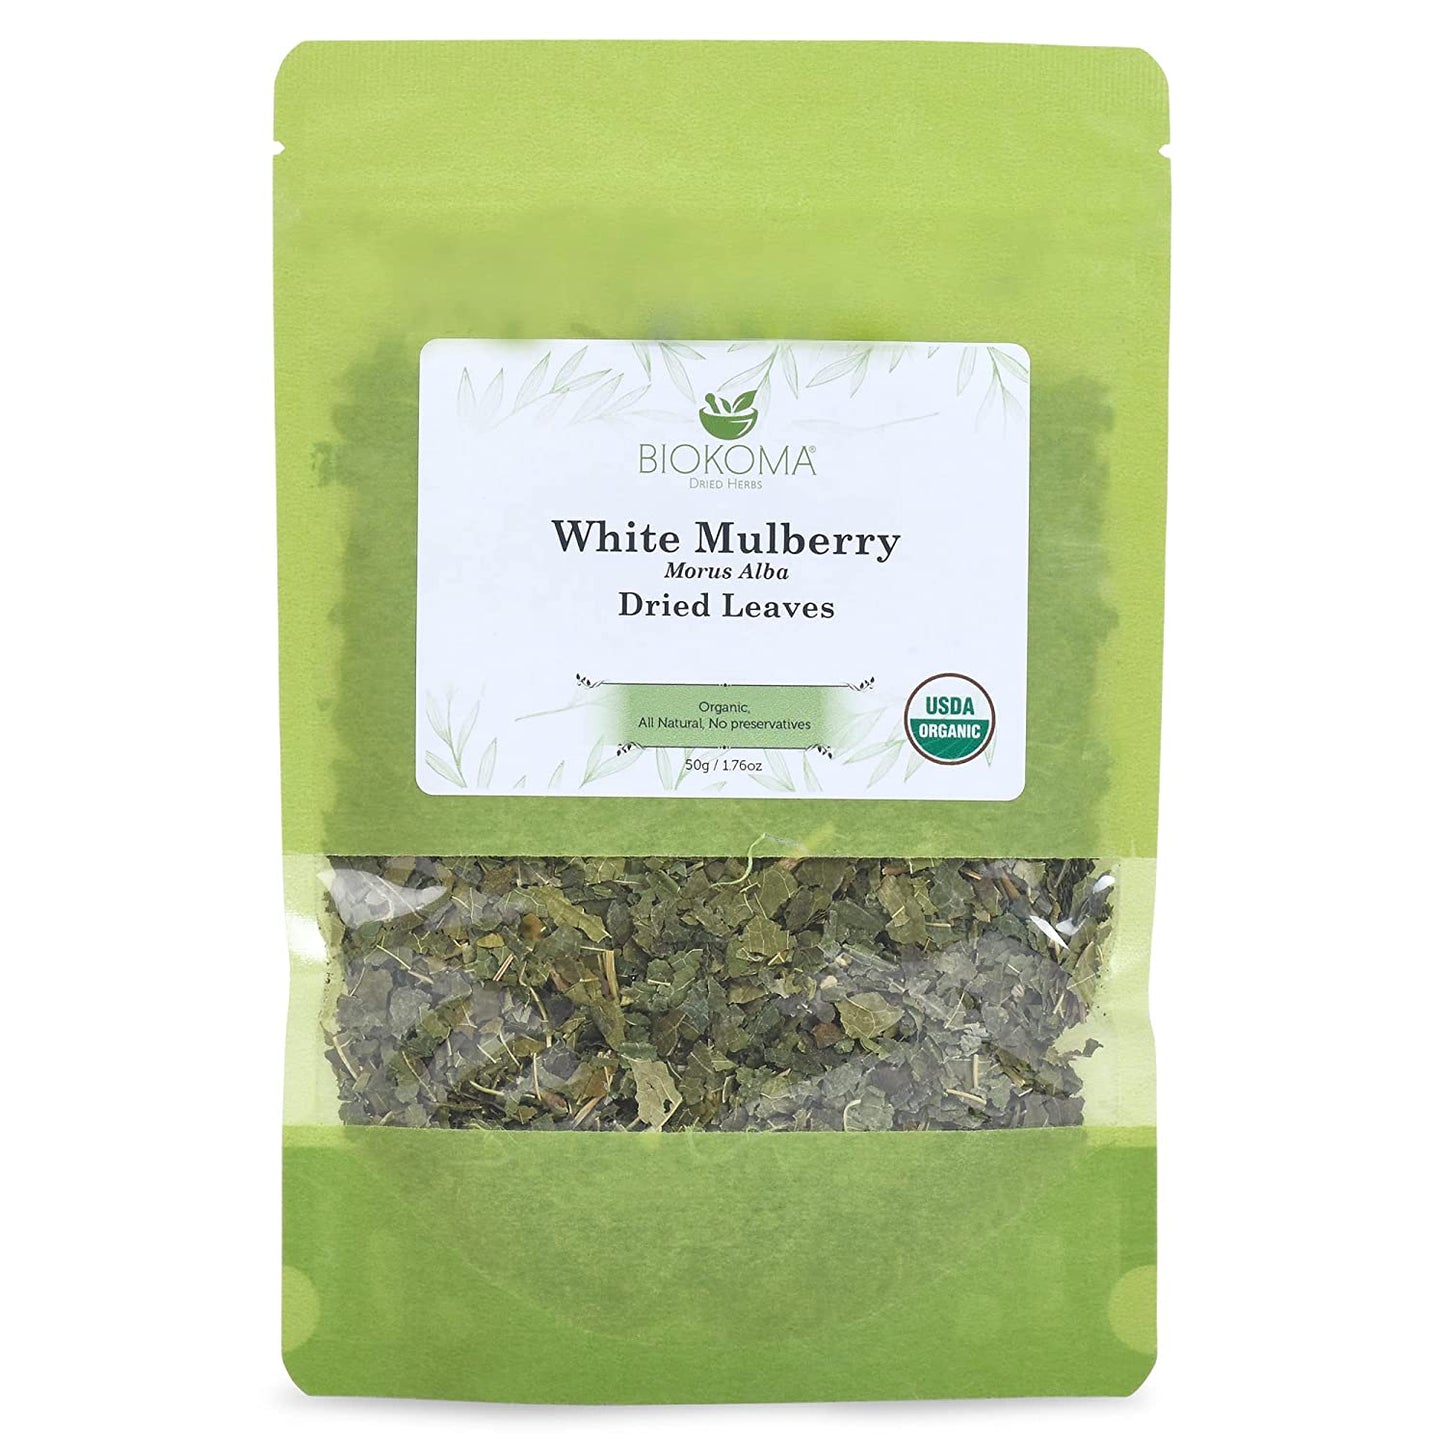 White Mulberry 100% puro y orgánico Biokoma blanco morera hojas secas 50g (1.76oz)